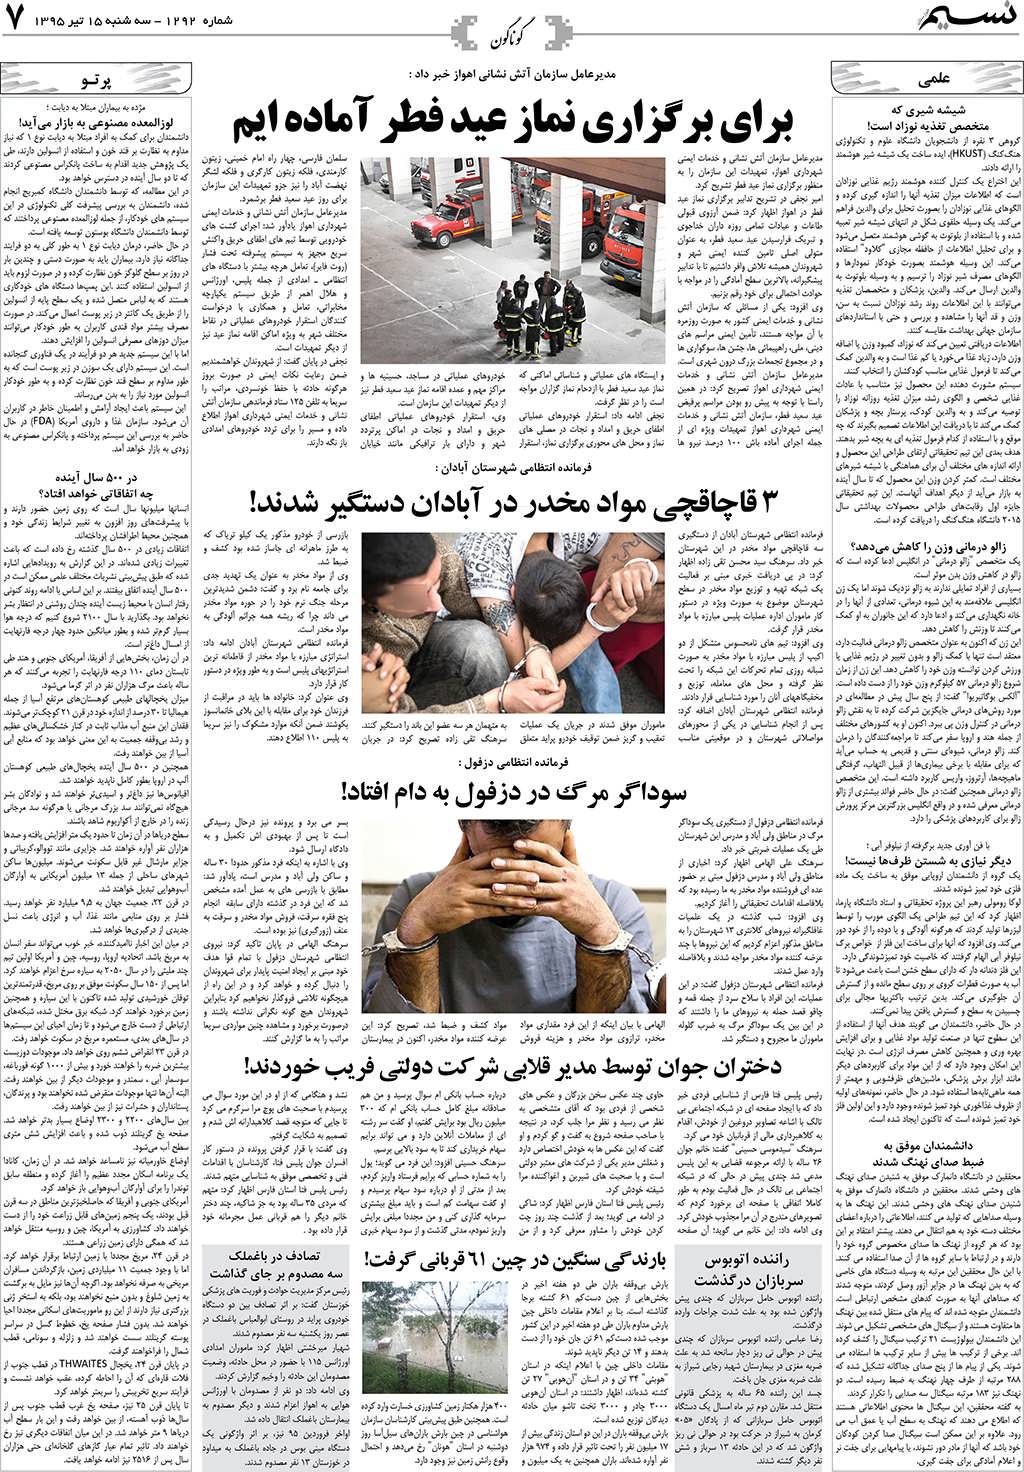 صفحه گوناگون روزنامه نسیم شماره 1292